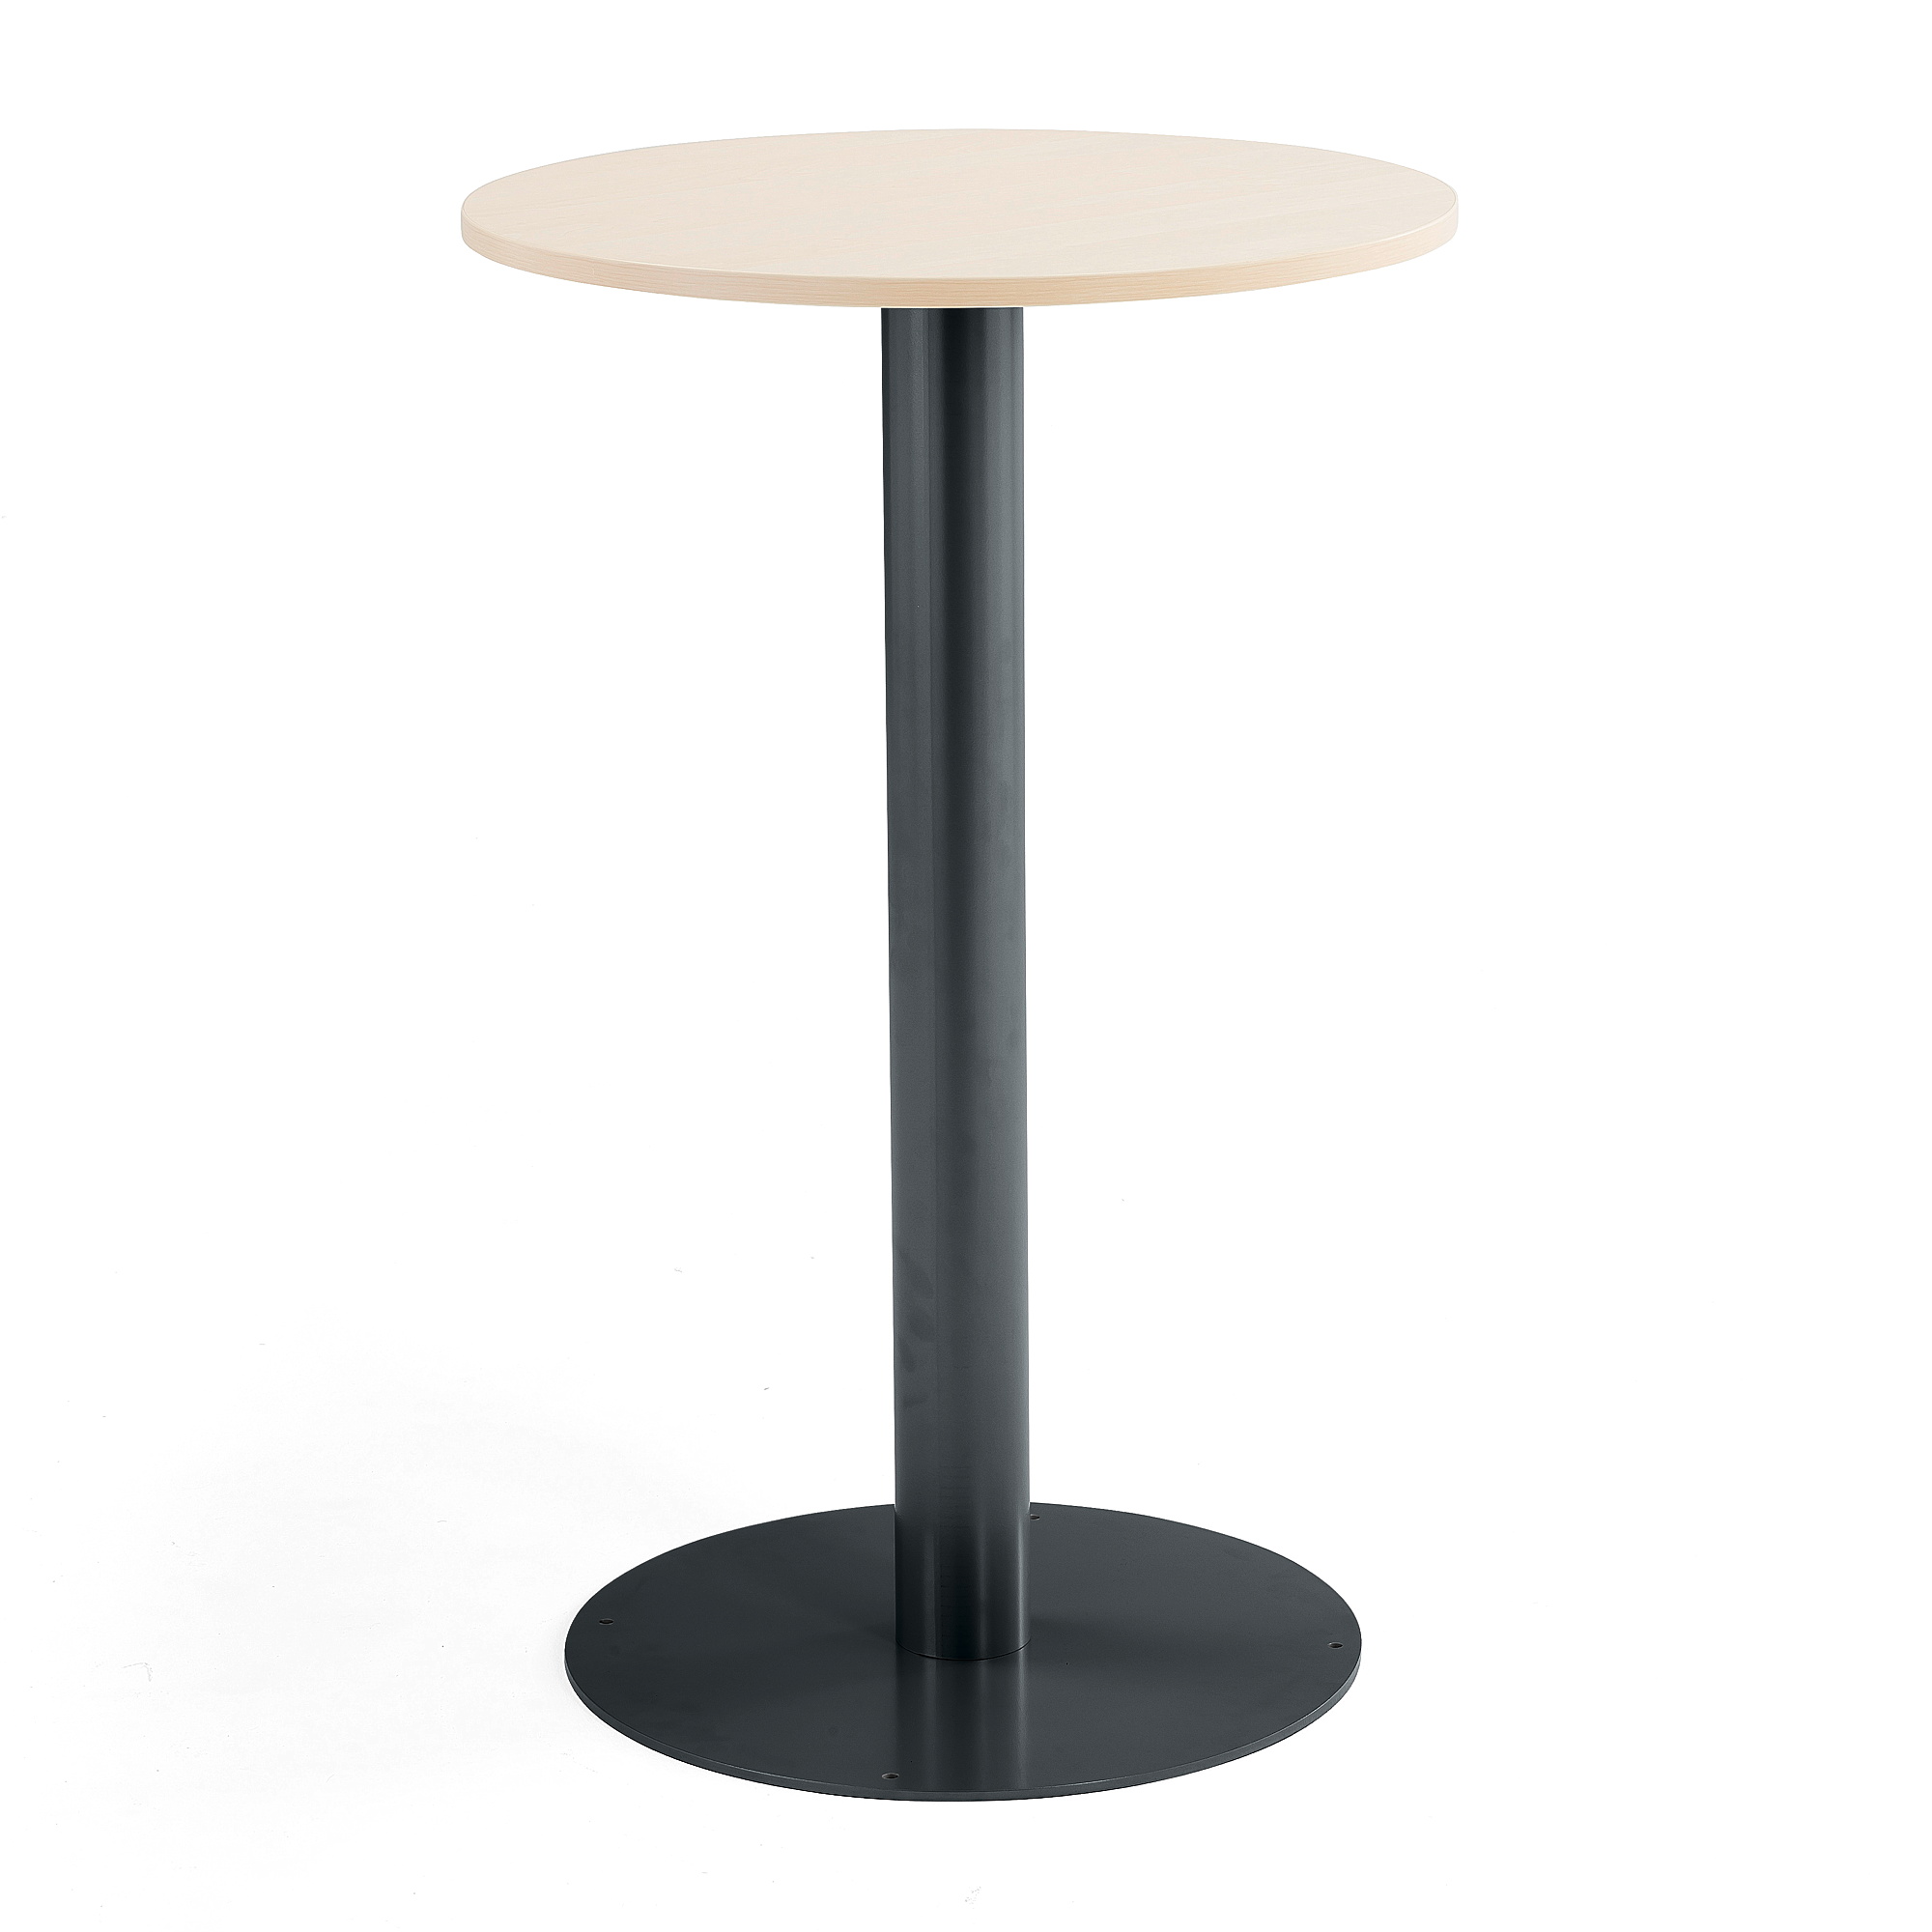 Kulatý stůl Alva, Ø700x1100 mm, bříza, antracitově šedá